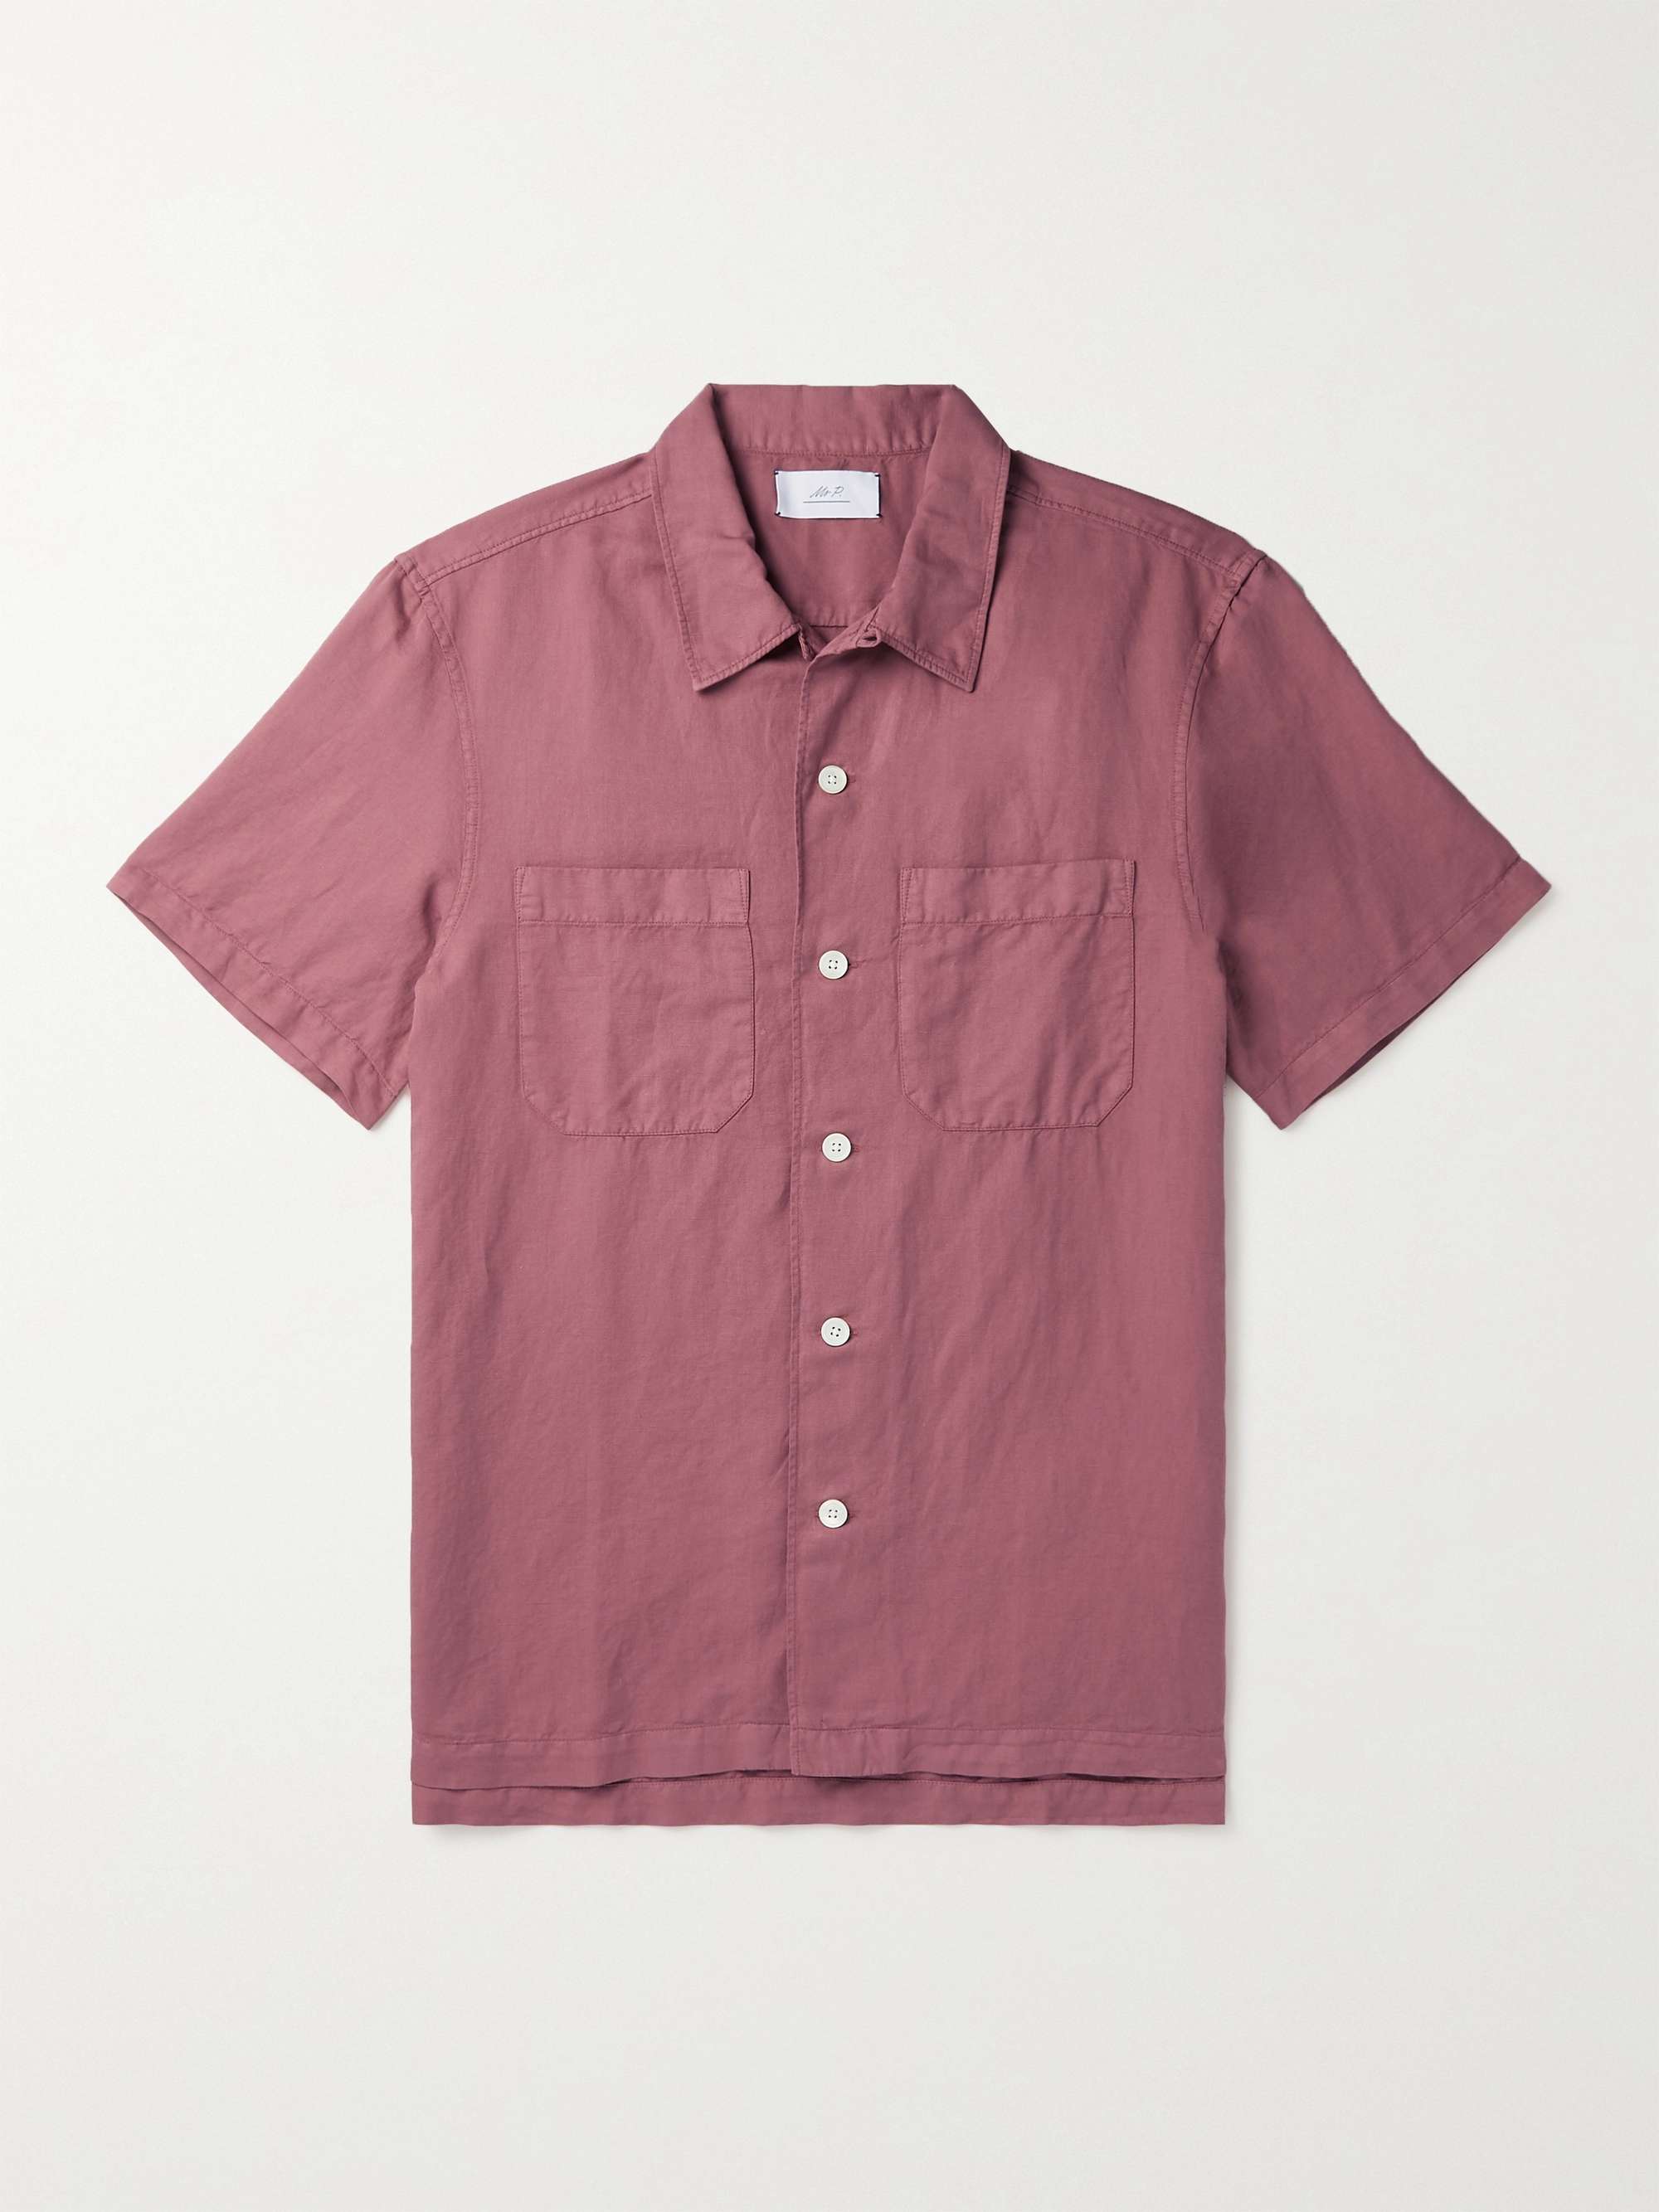 MR P. Convertible-Collar Garment-Dyed Cotton and Linen-Blend Shirt